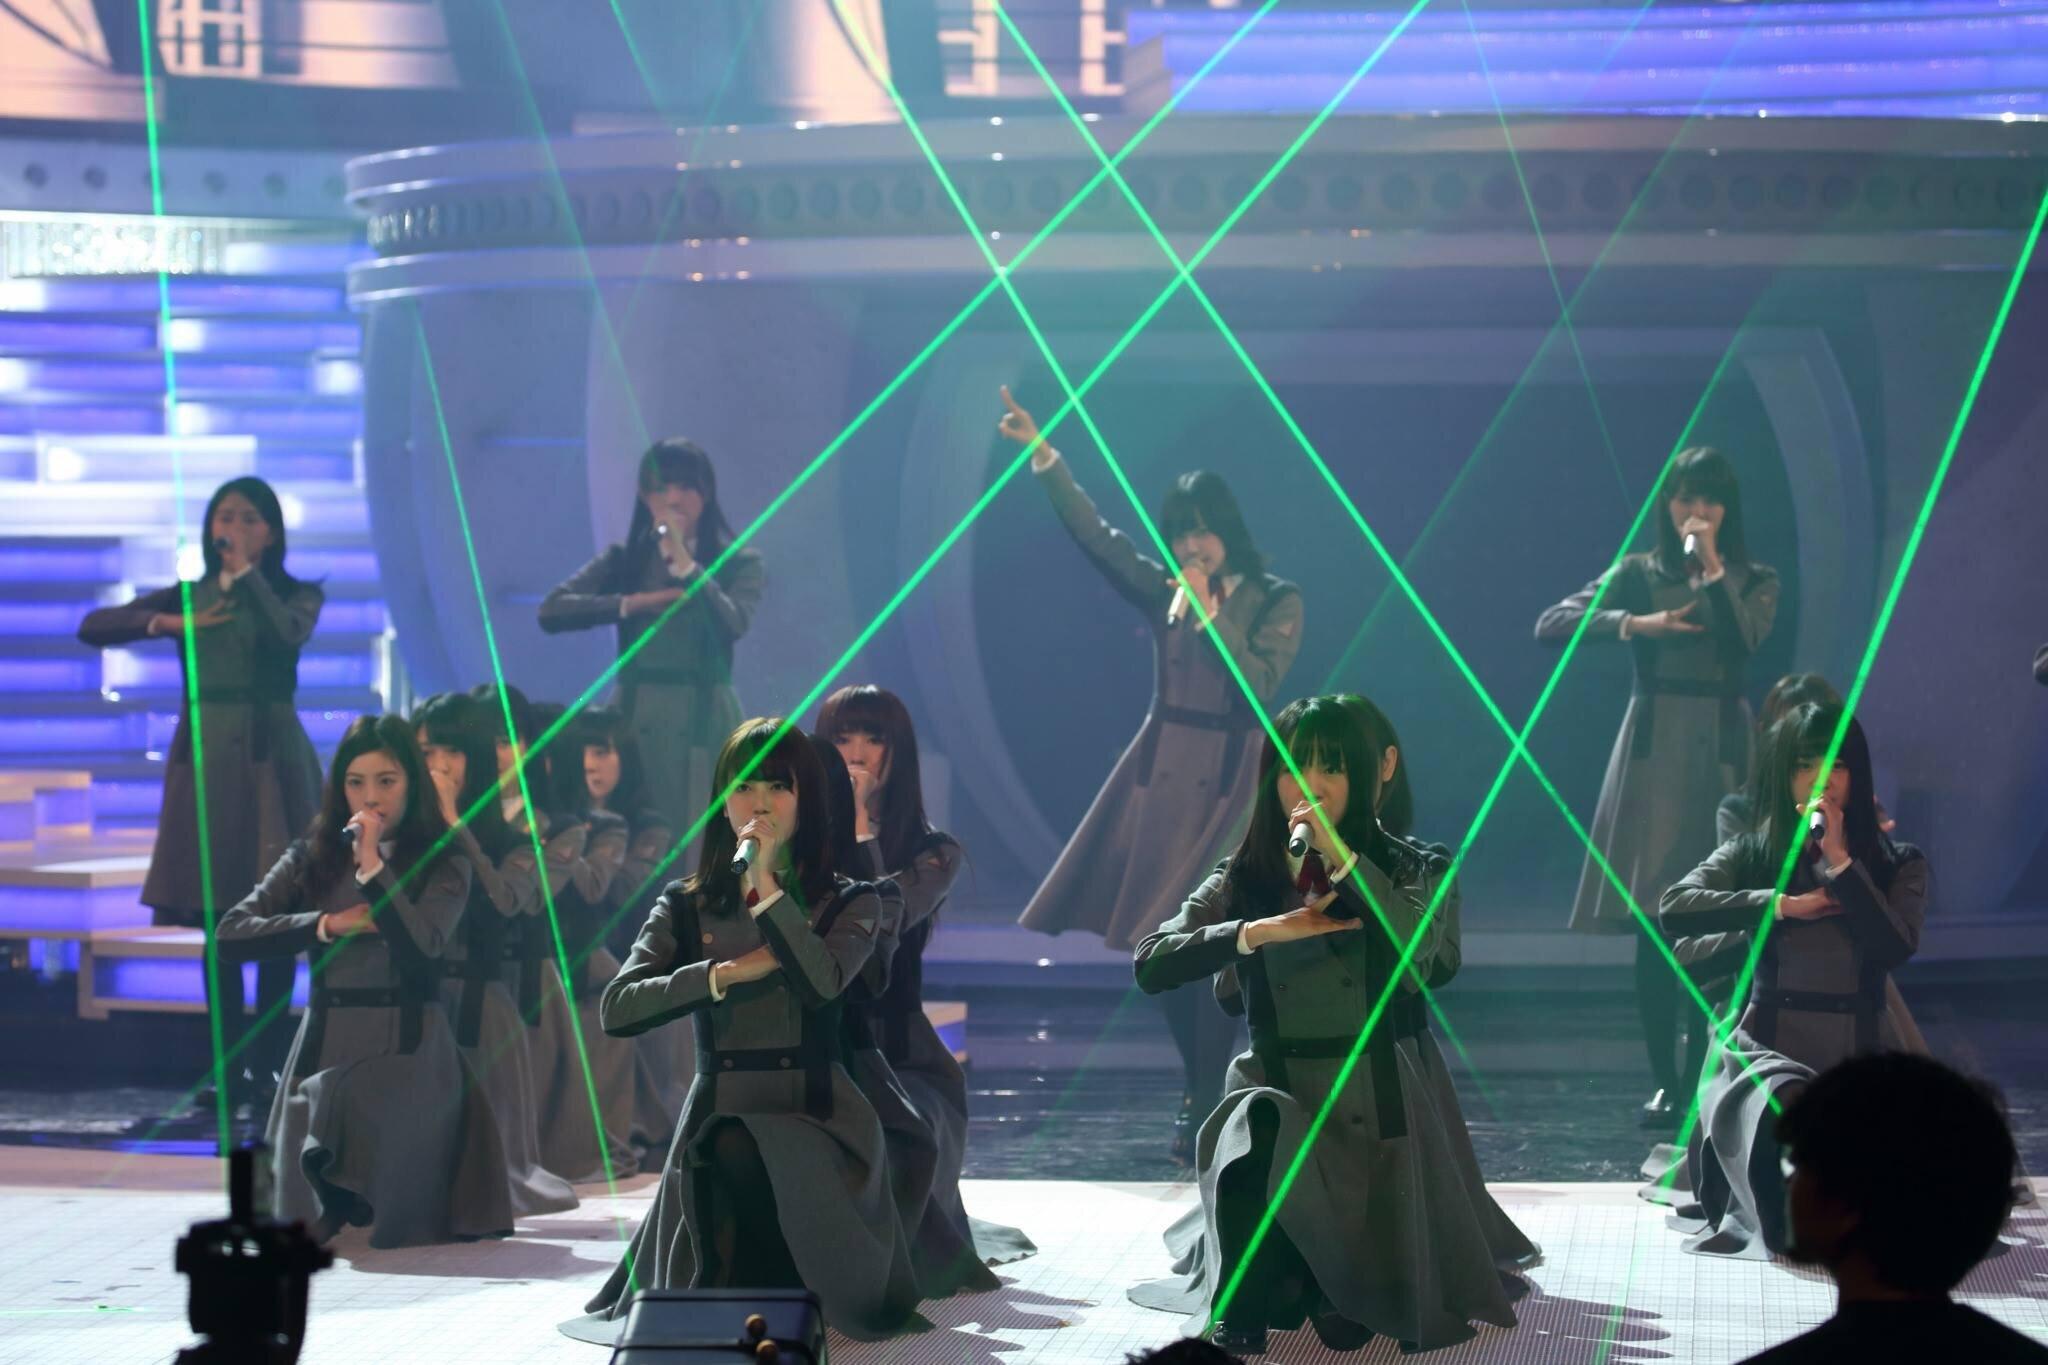 2016年NHK紅白歌合戦で「サイレントマジョリティ―」を披露した時の欅坂46のパフォーマンス

